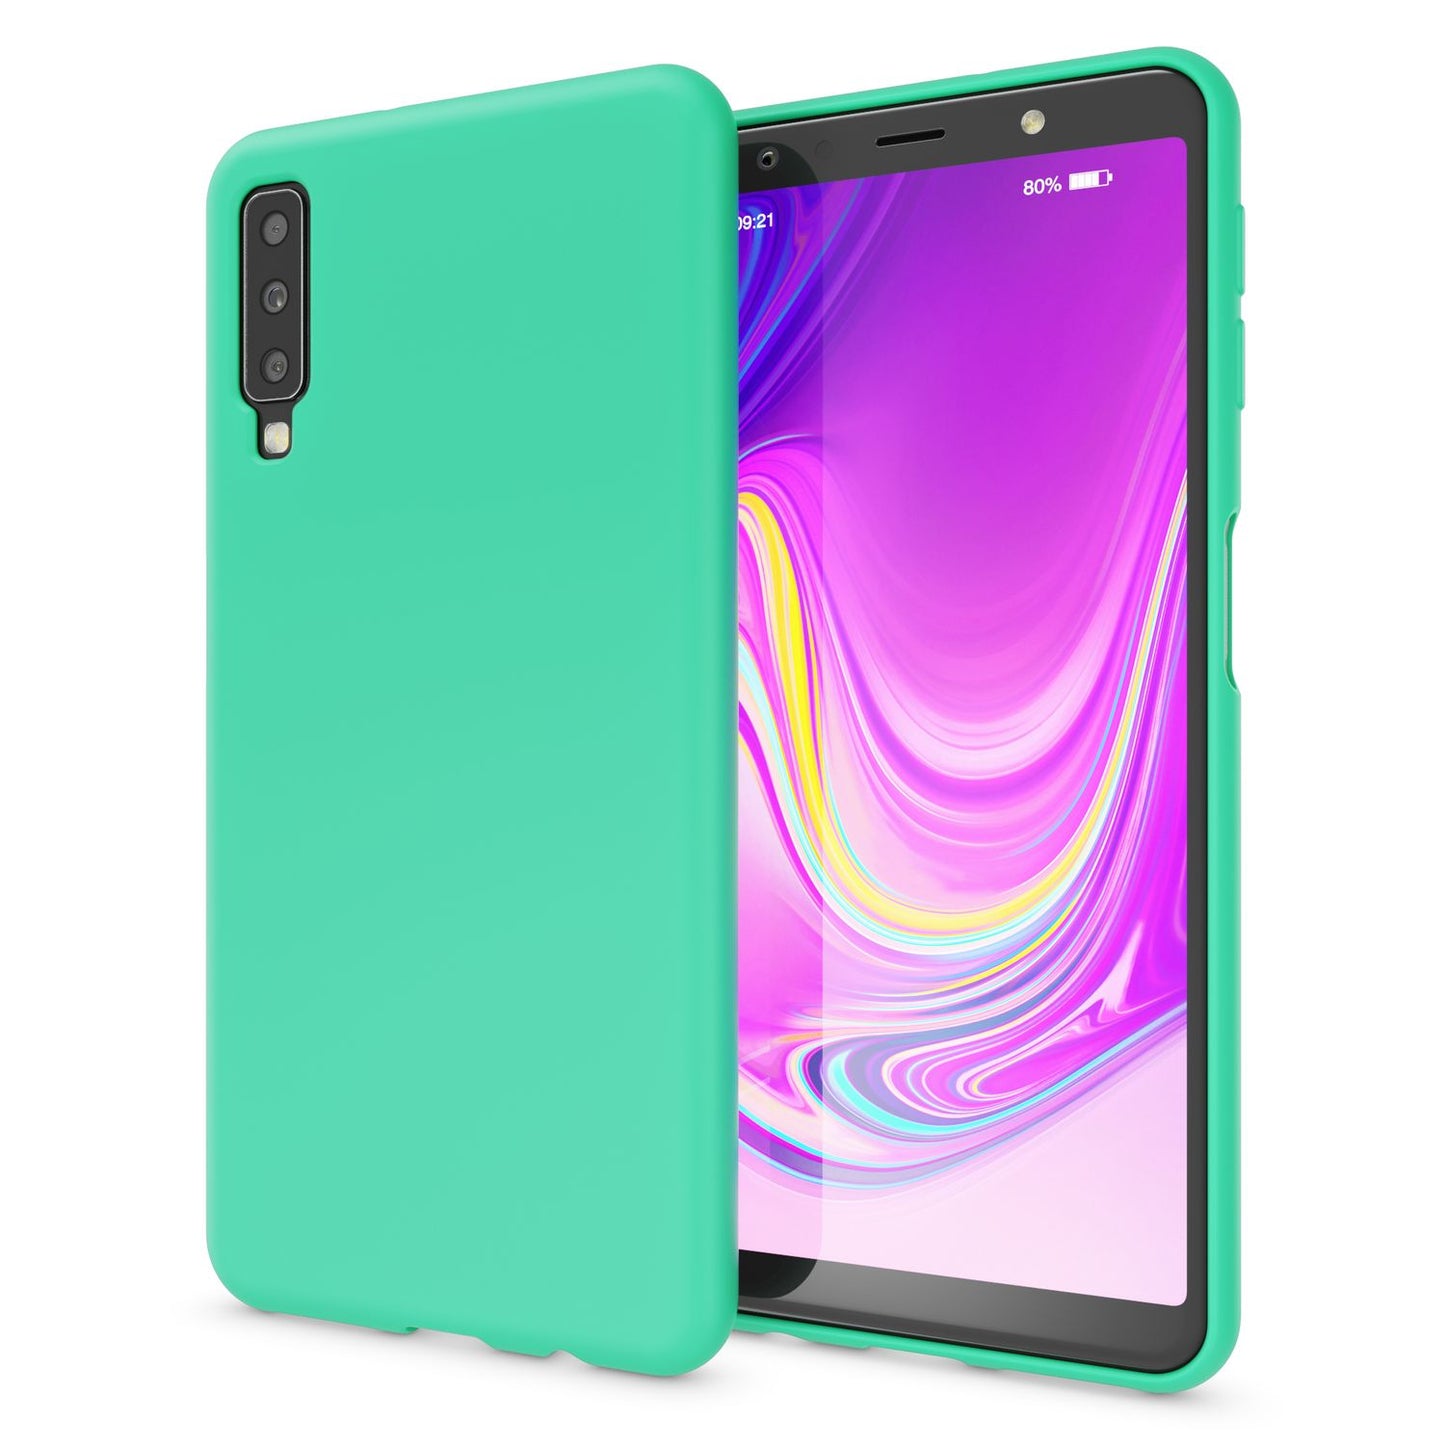 NALIA Handy Hülle für Samsung A7 2018, Ultra Slim Silikon Neon Case Cover Schutz